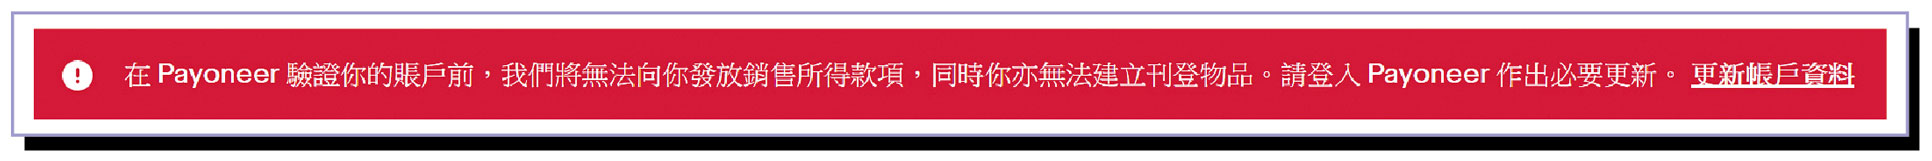 假如消費者未有完成Payoneer的帳戶驗證程序，「eBay Hong Kong」（#3）將顯示用戶無法刊登物品等警告字眼。